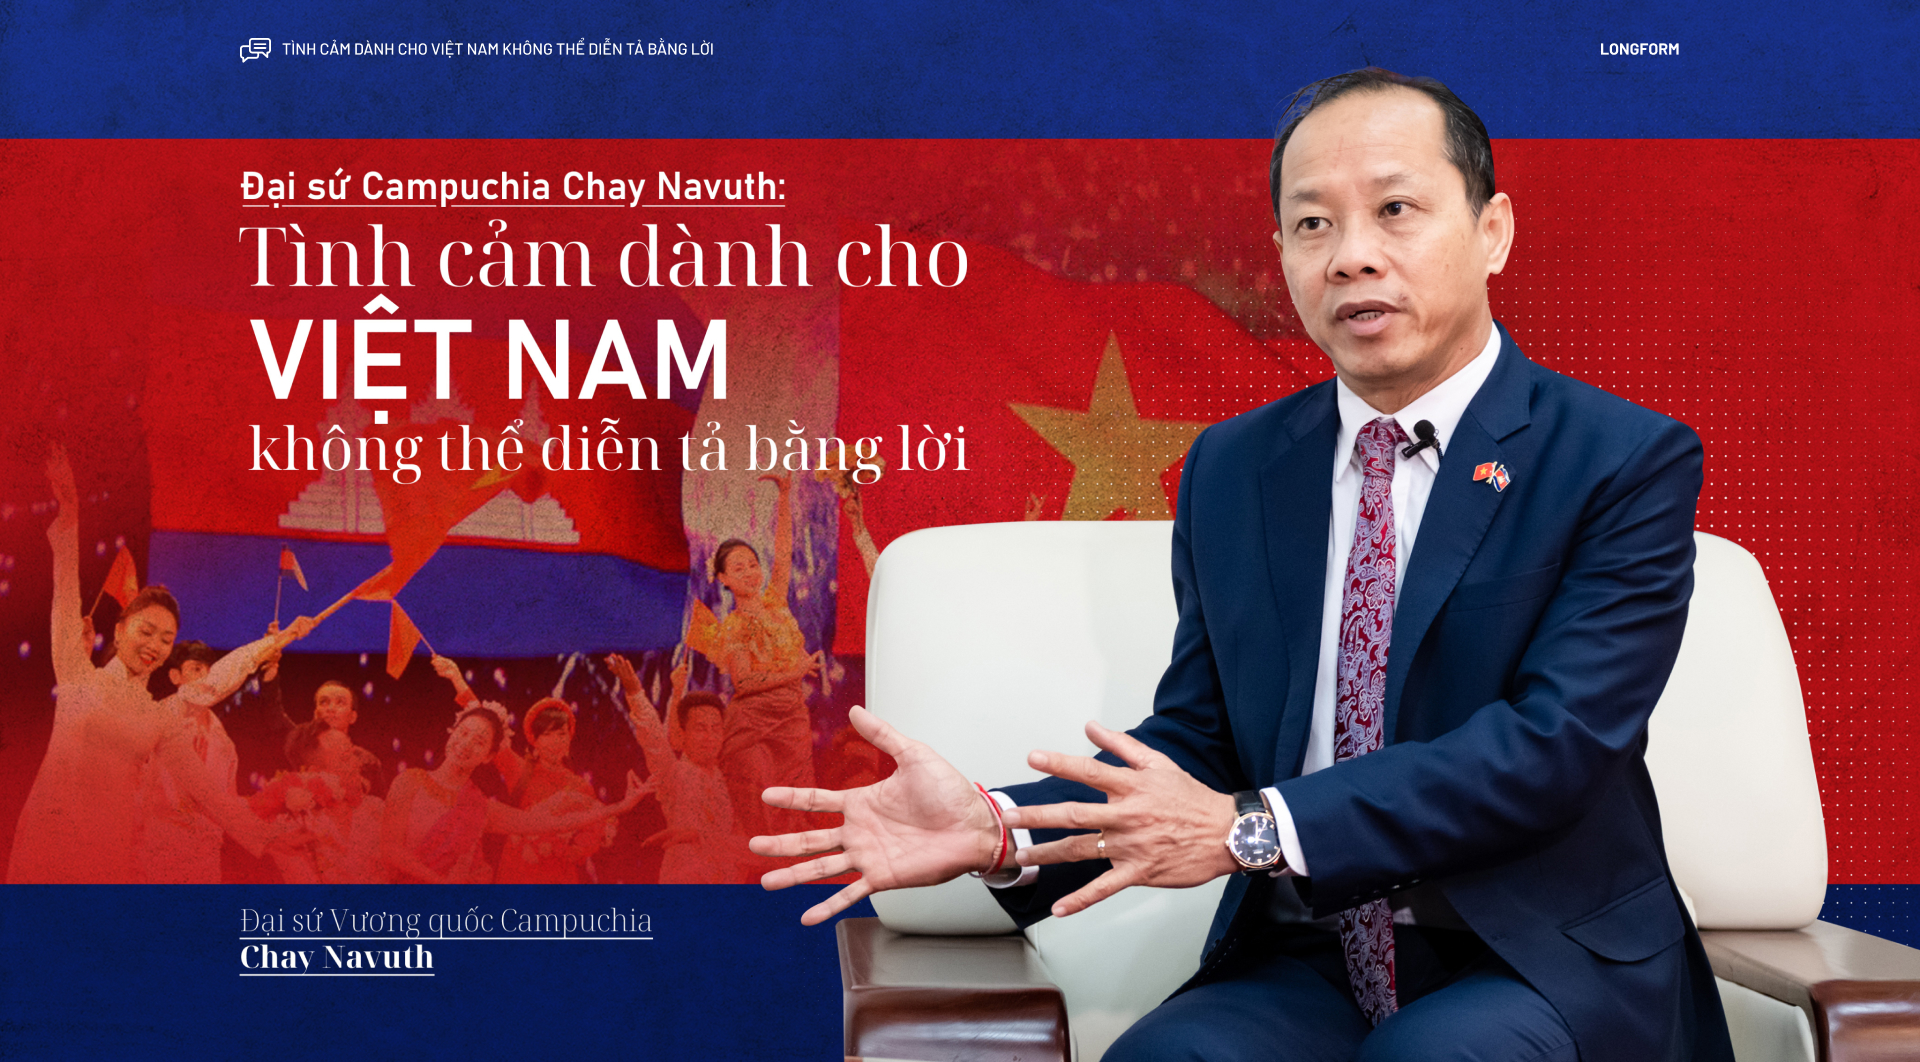 Đại sứ Campuchia Chay Navuth: Tình cảm dành cho Việt Nam không thể diễn tả bằng lời